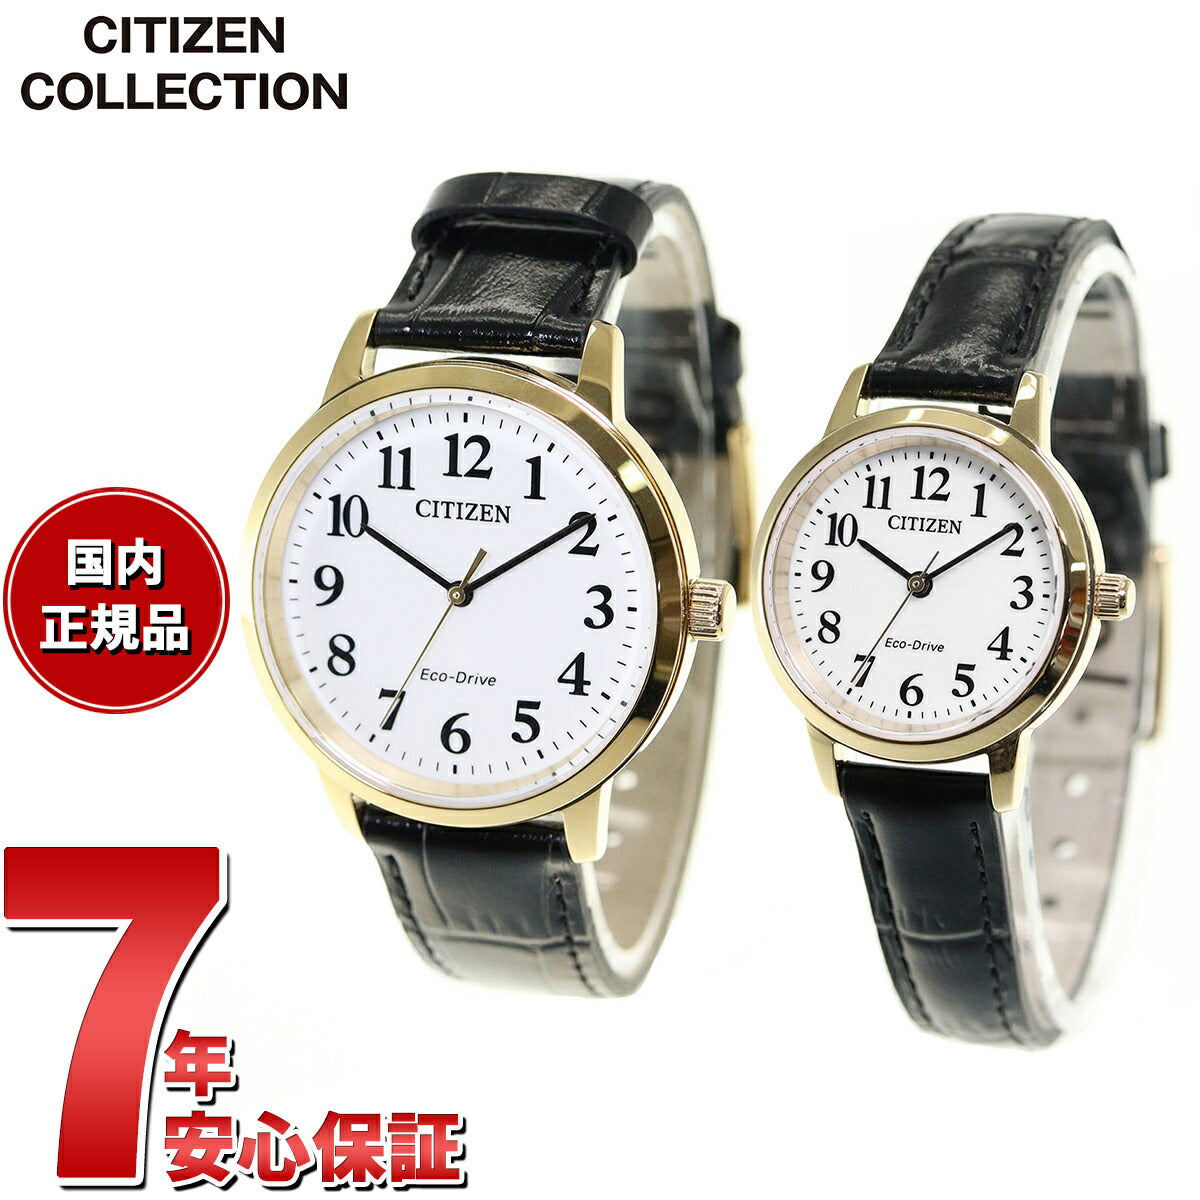 シチズンコレクション CITIZEN COLLECTION 腕時計 メンズ レディース ペアモデル エコドライブ ソーラー BJ6543-1 –  neel selectshop